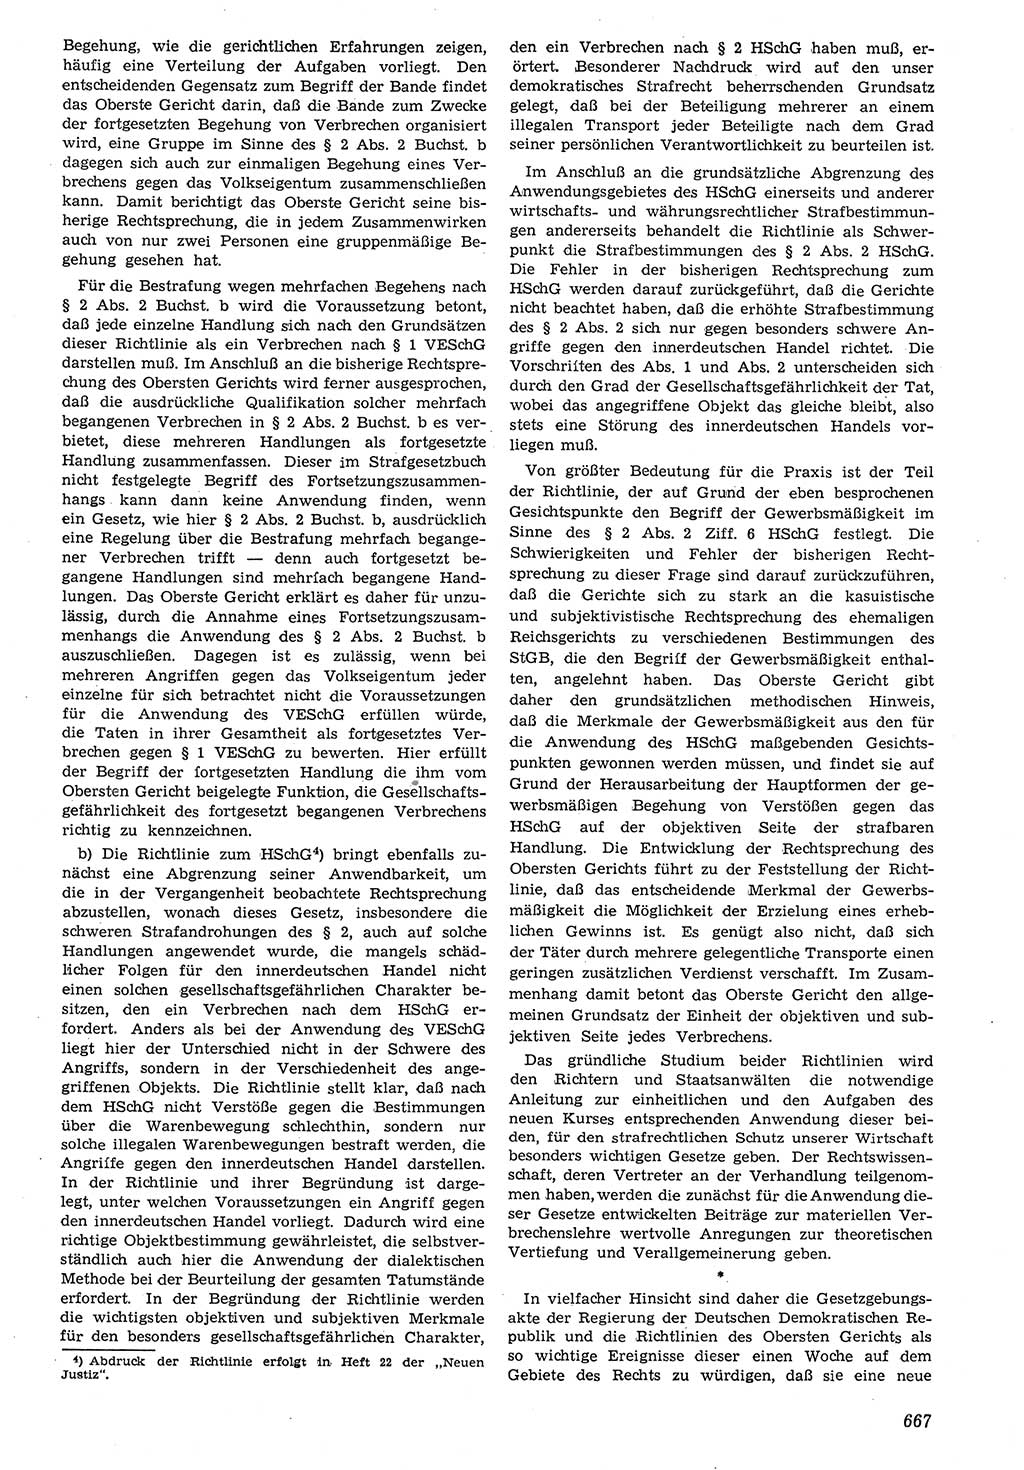 Neue Justiz (NJ), Zeitschrift für Recht und Rechtswissenschaft [Deutsche Demokratische Republik (DDR)], 7. Jahrgang 1953, Seite 667 (NJ DDR 1953, S. 667)